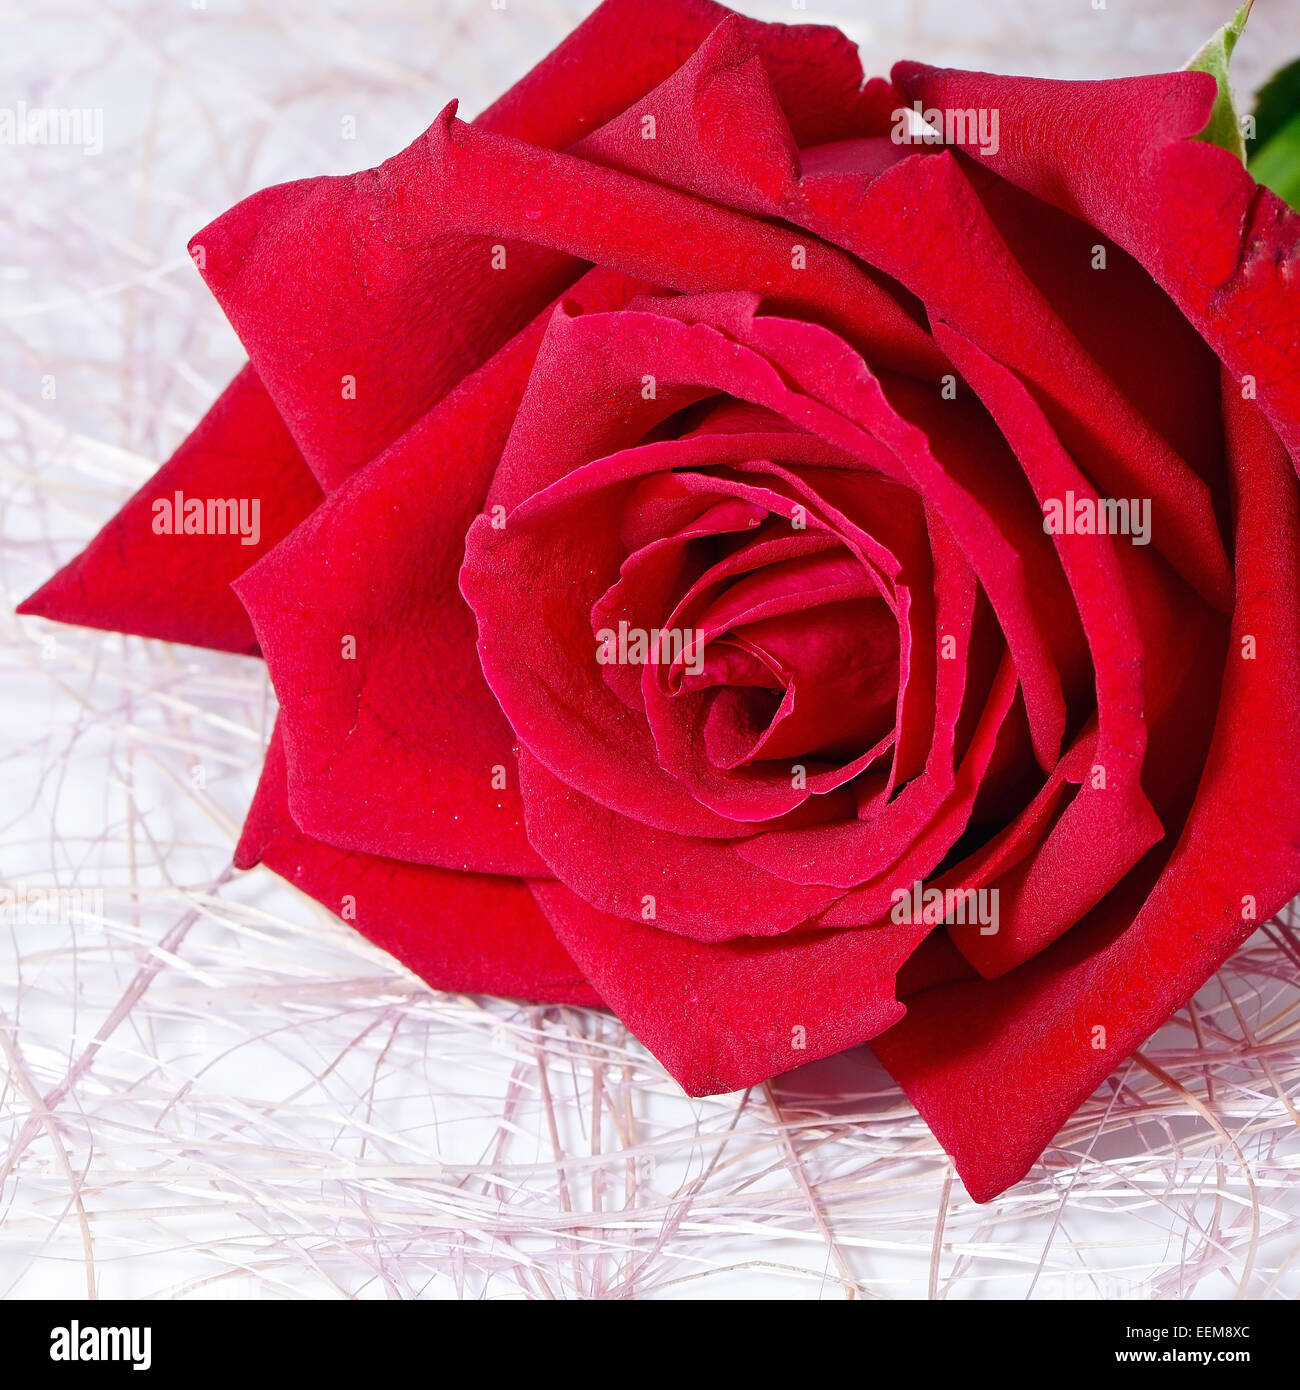 Red Rose, isolé sur fond blanc Banque D'Images